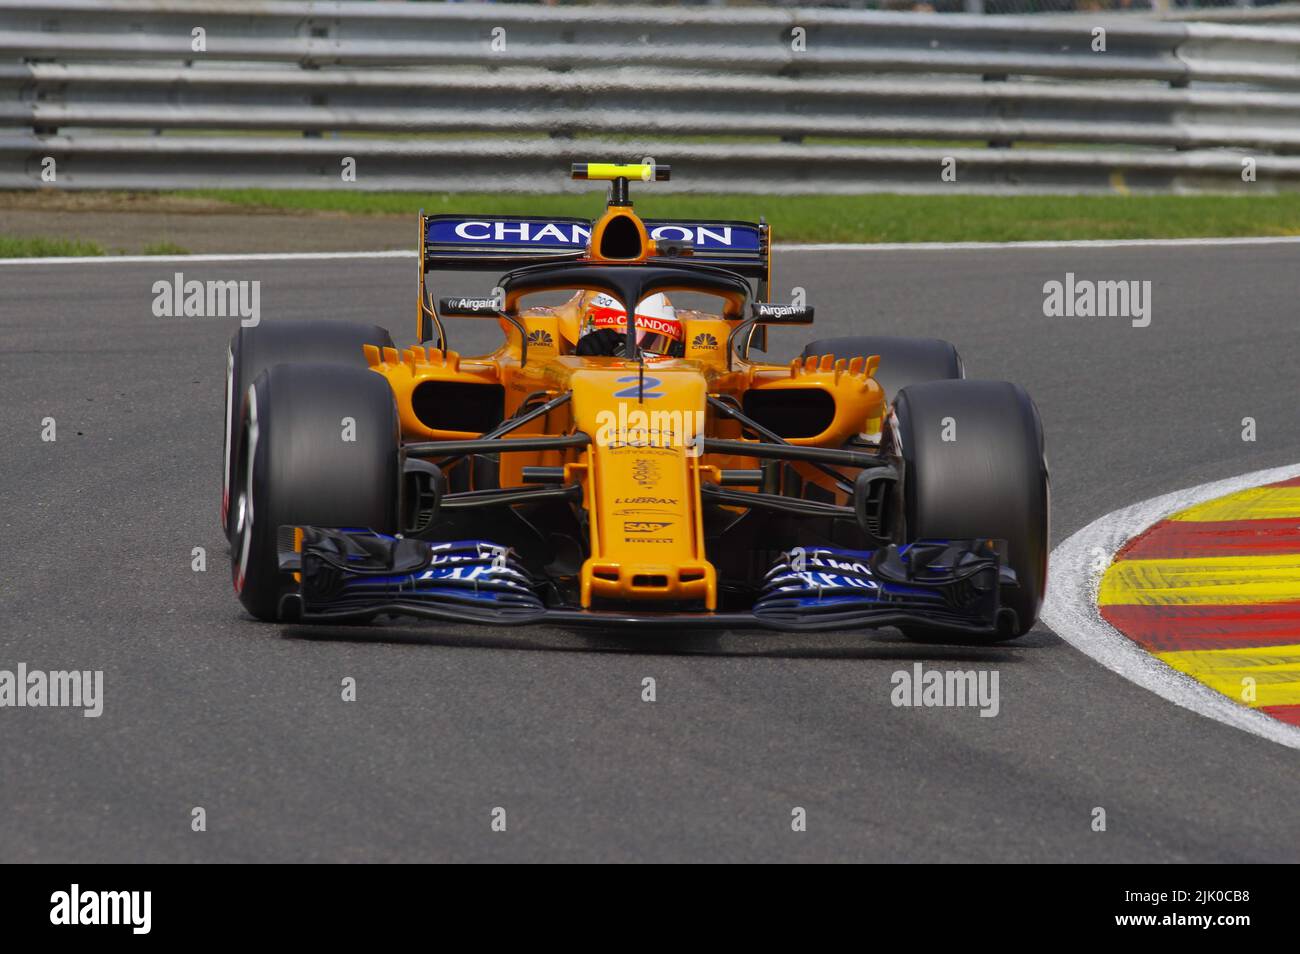 Stoffel Vandoorne - McLaren - Formula 1 Belgian Grand Prix 2018 Stock Photo